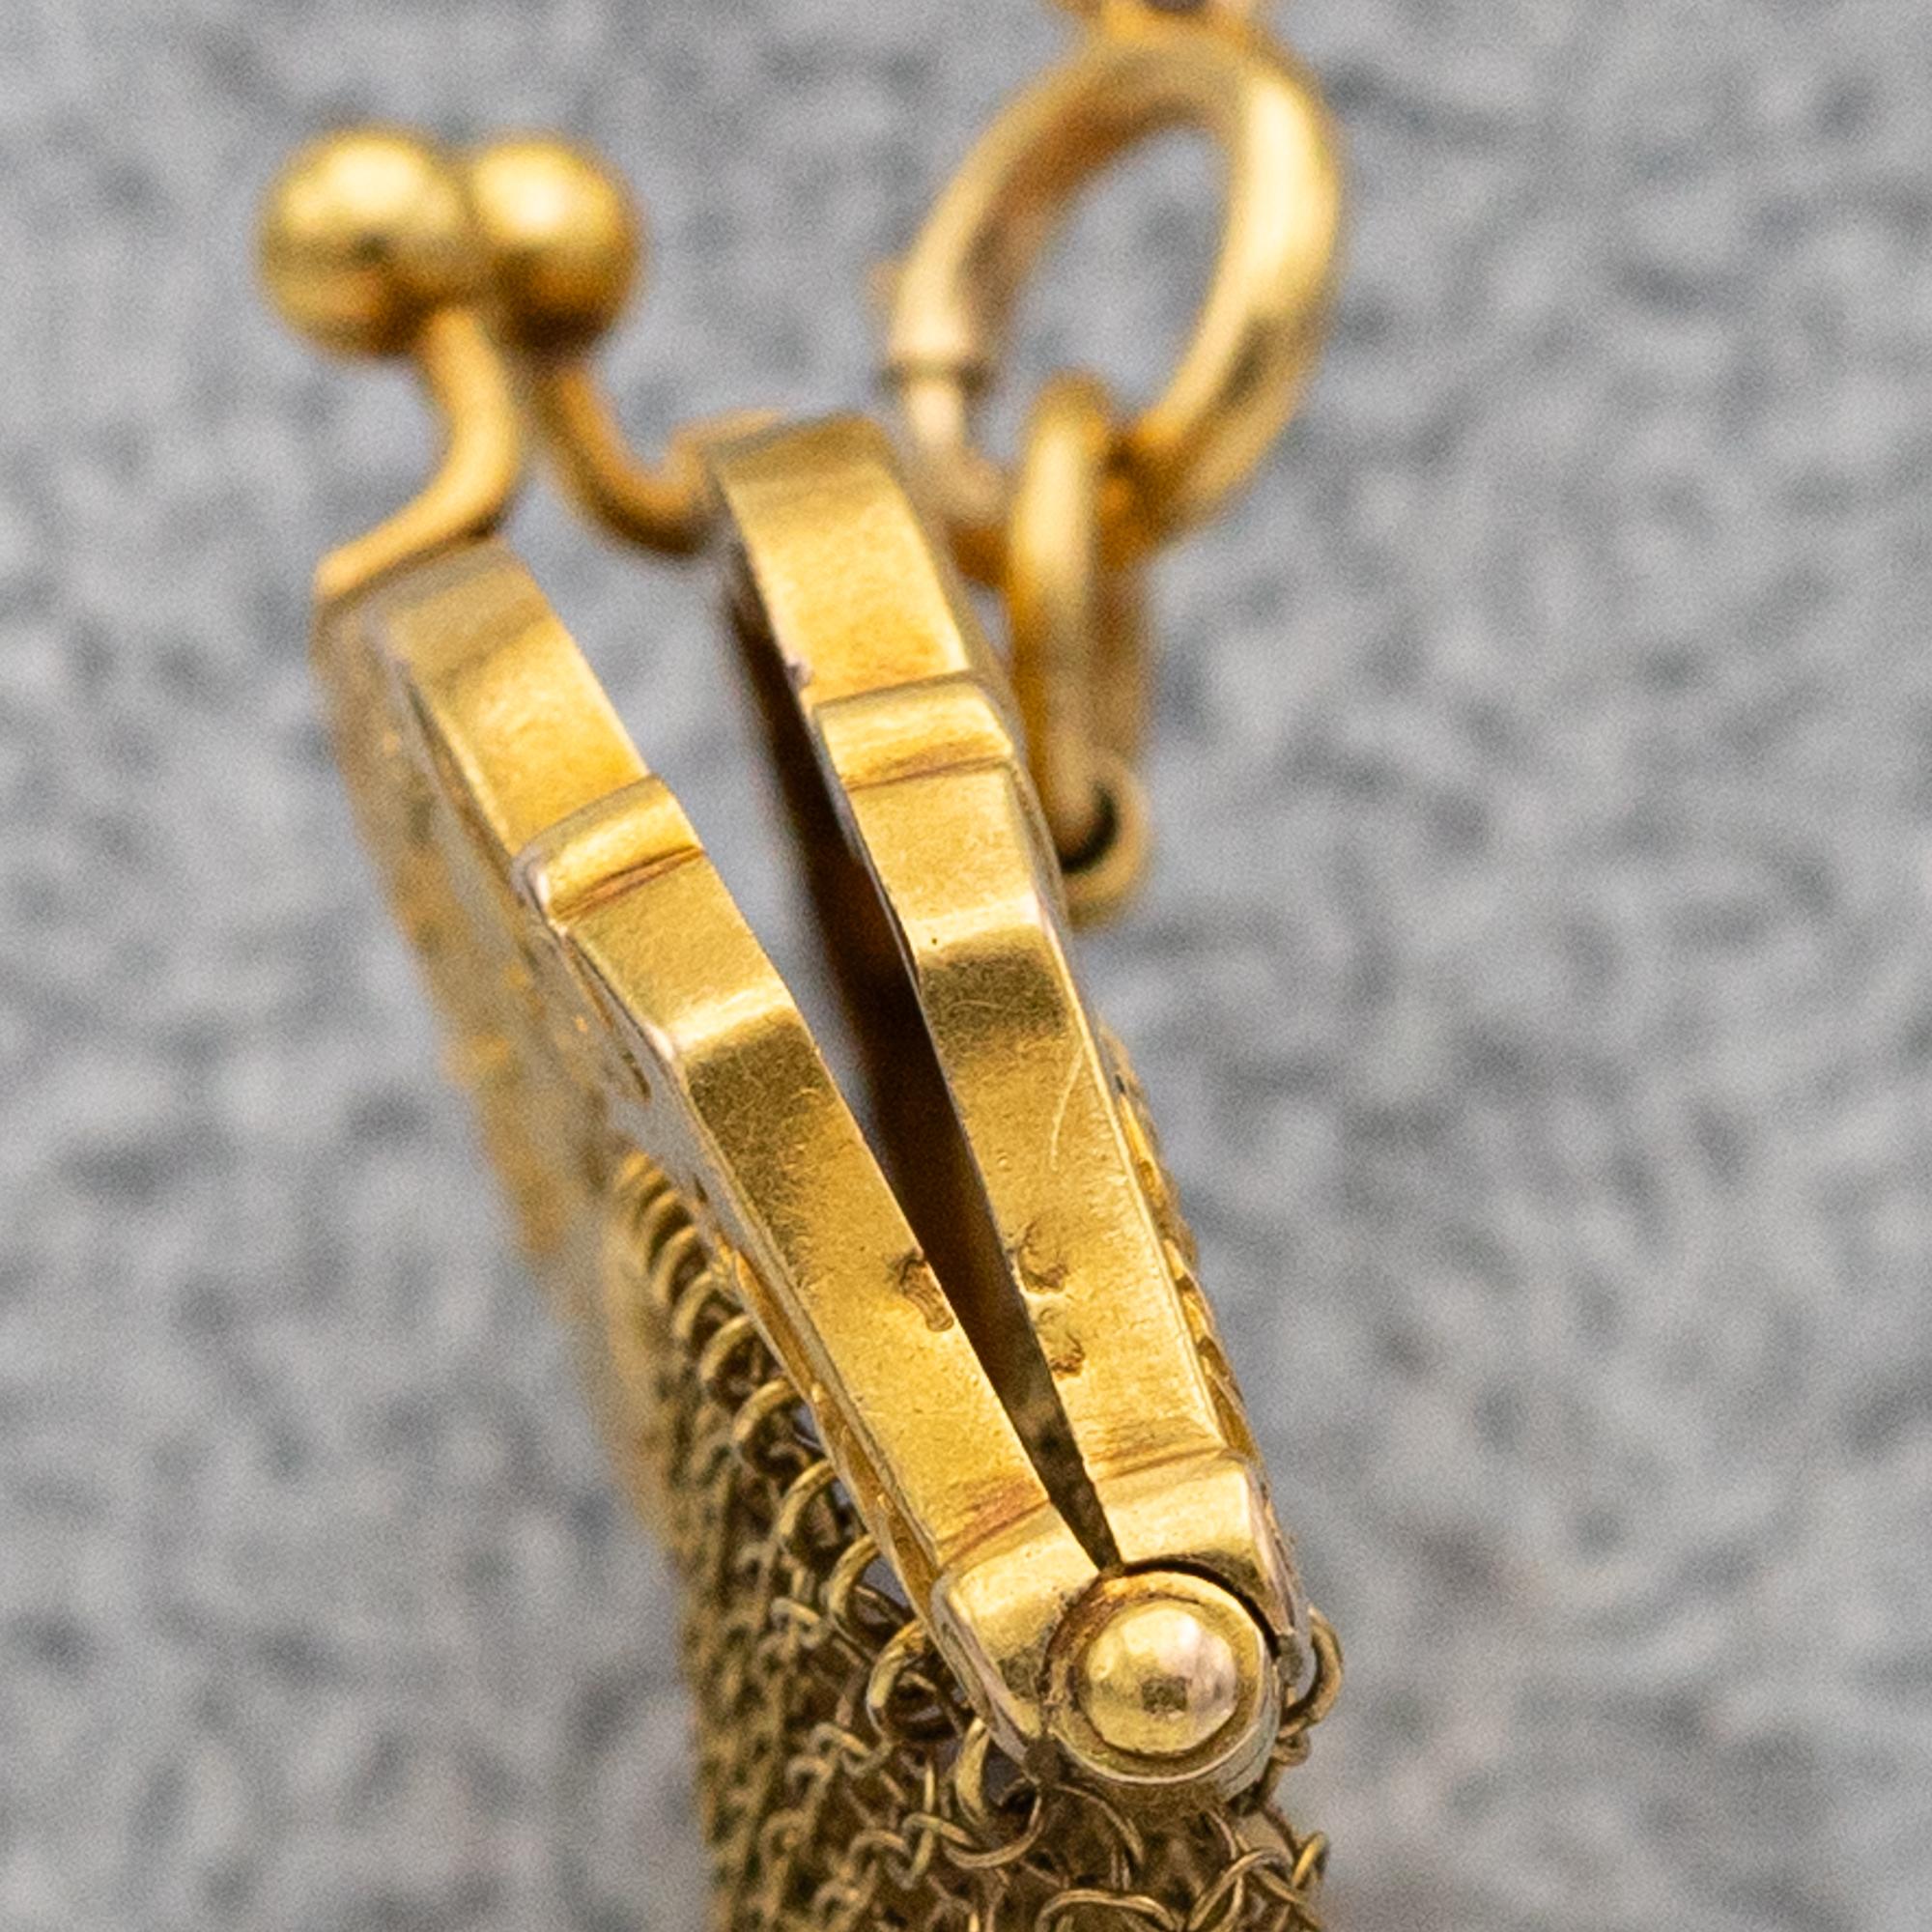 18k French Antique Gold mesh purse - Art Nouveau - Petite gold coin purse bag  For Sale 1